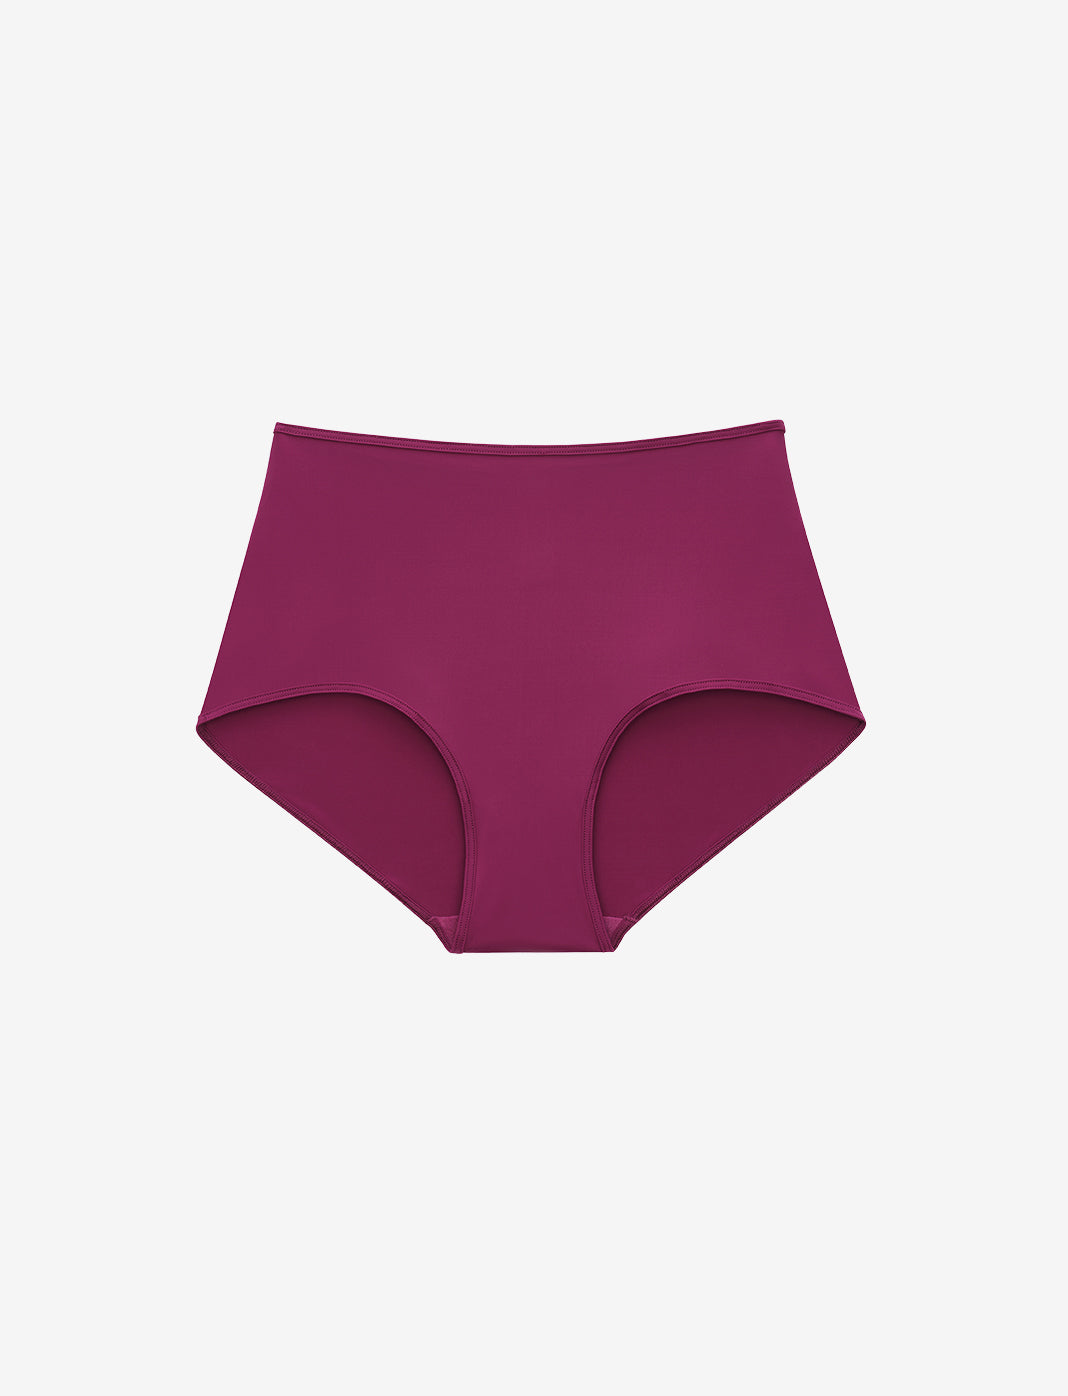 Women's High Waist Cotton Briefs Underwear In Navy - Lake Jane Studio